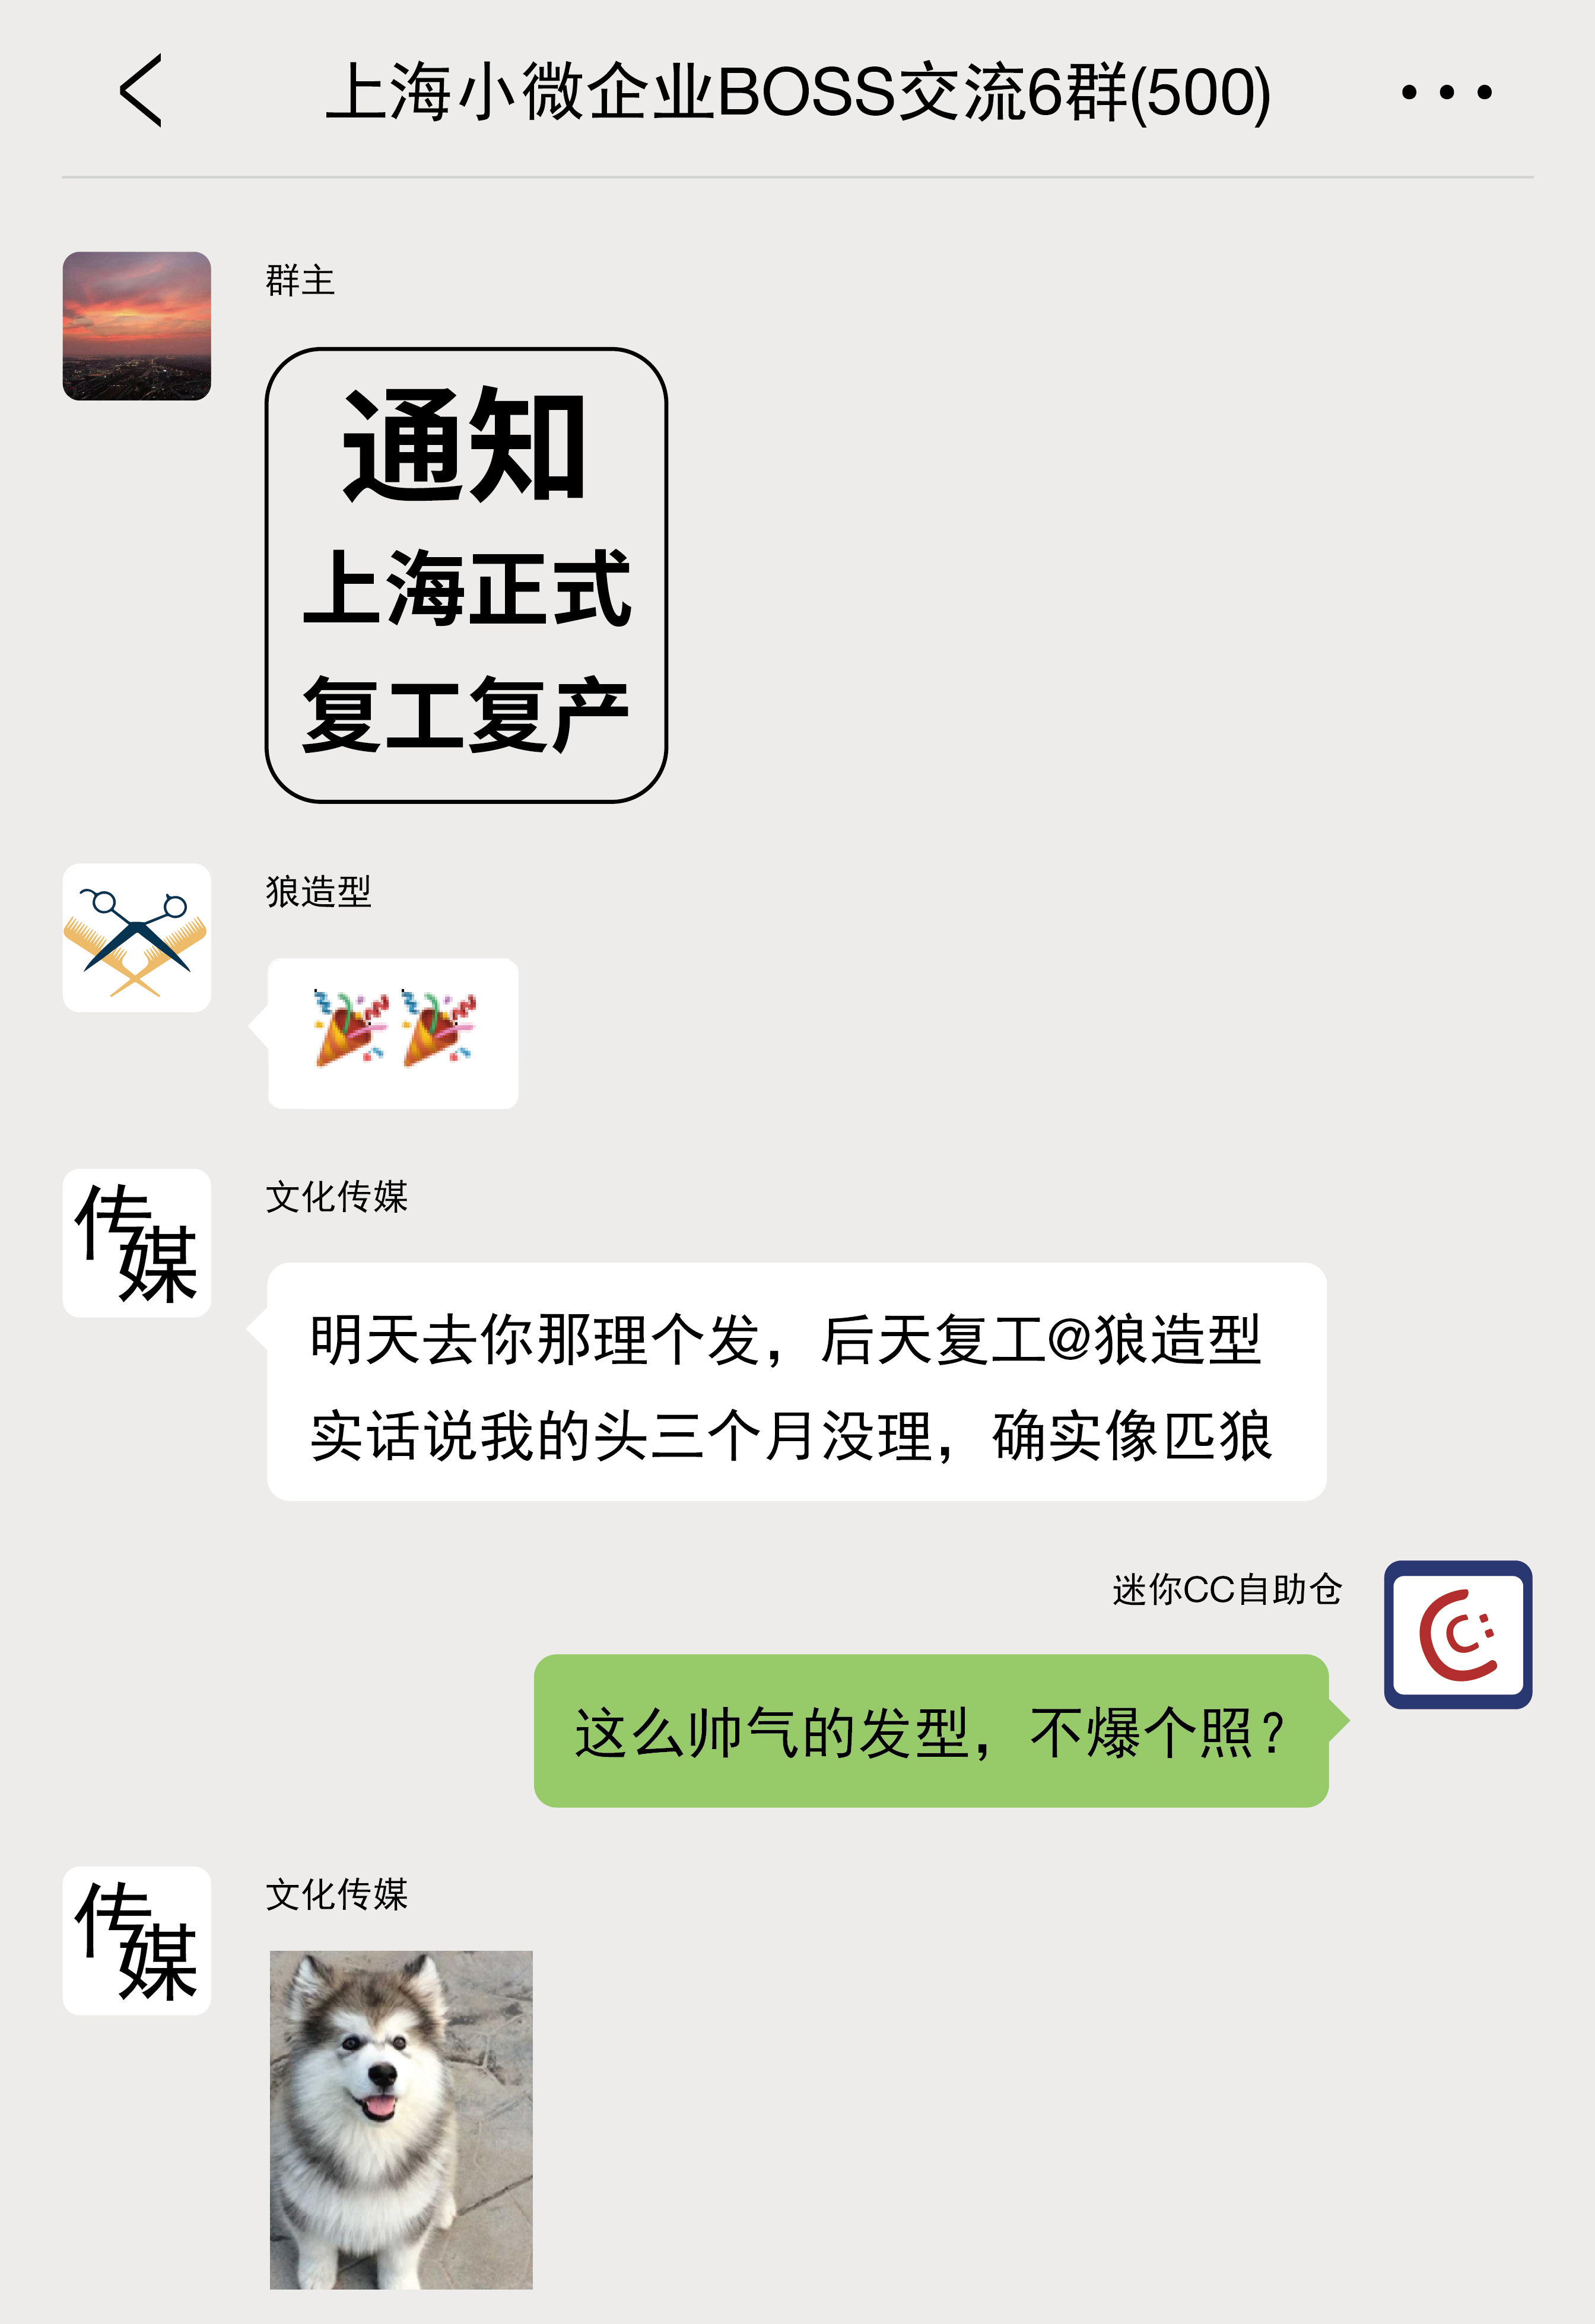 上海微小企业BOSS交流群-07.jpg